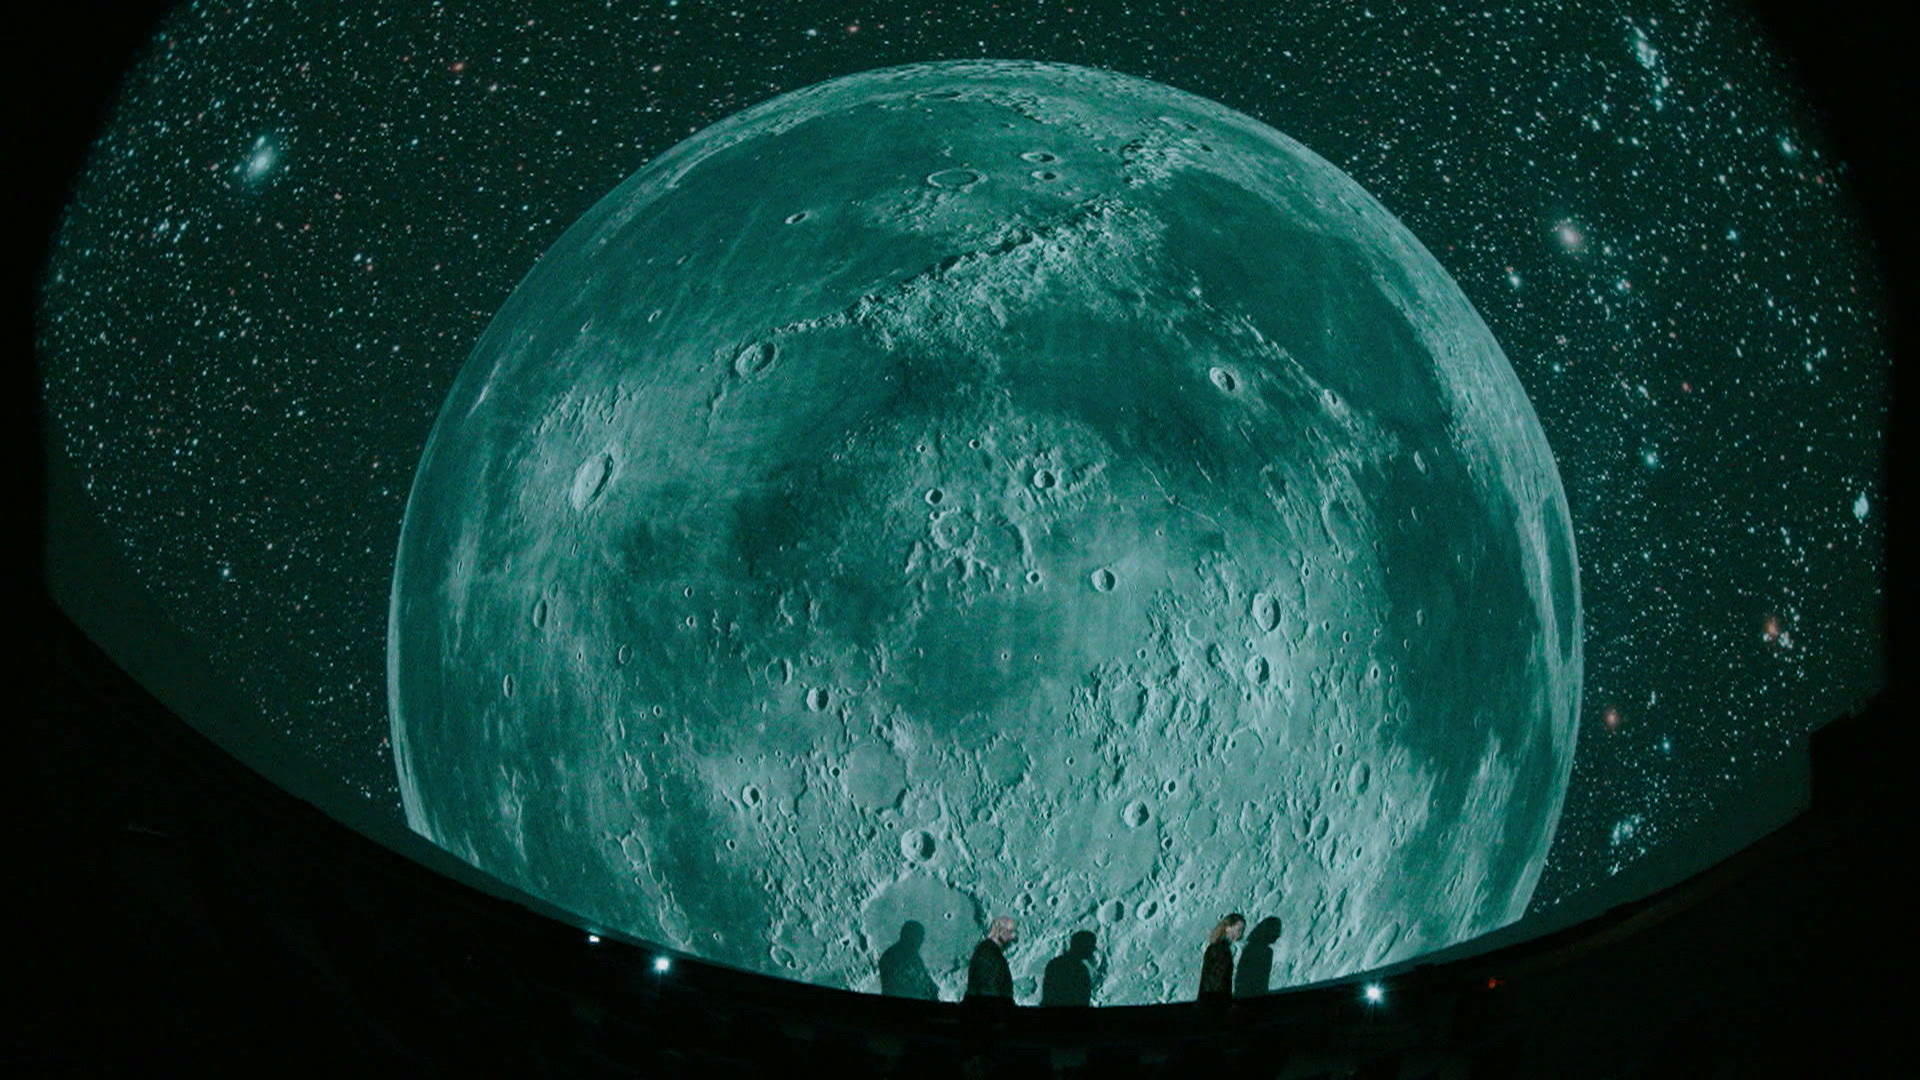 Beeinflusst der Mond wirklich die weibliche Periode? Kosmische Studienergebnisse